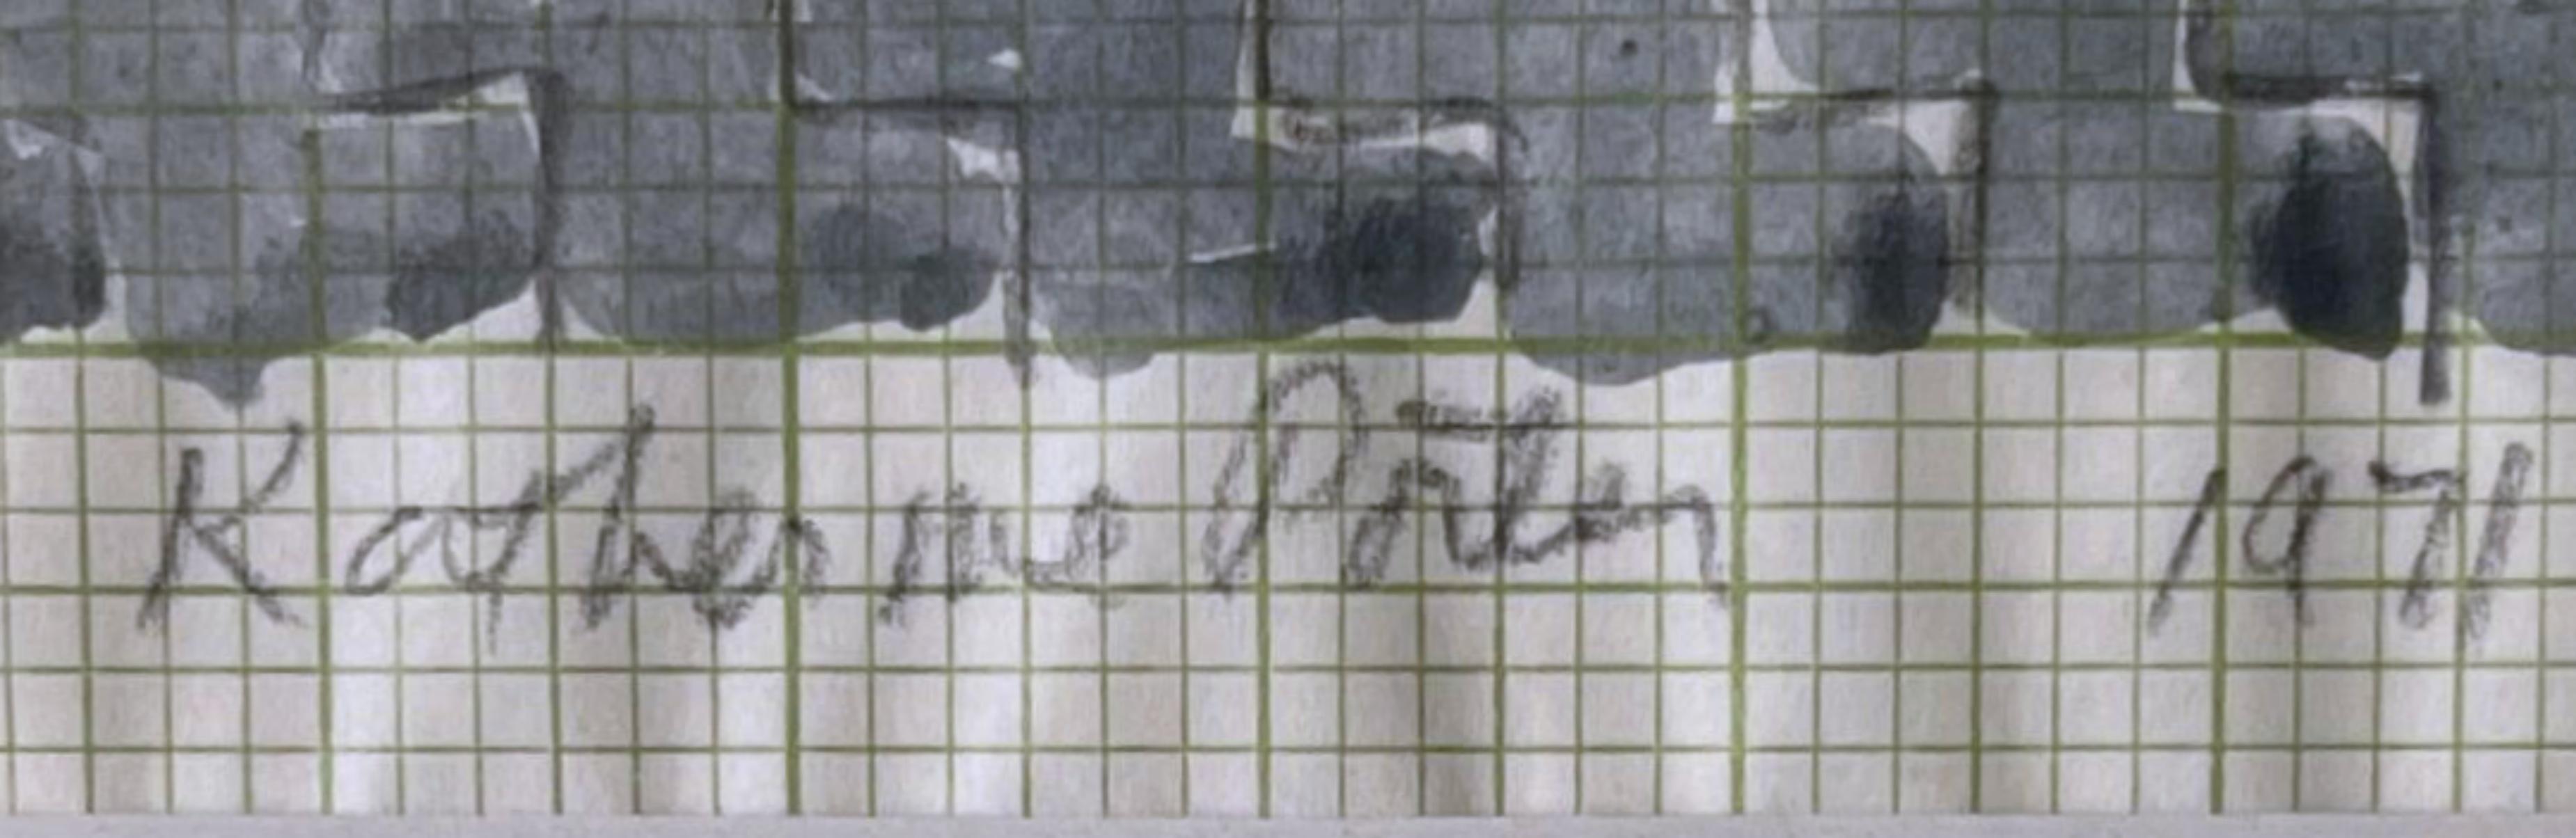 Katherine Porter
Geometrische Abstraktion, 1971
Aquarell und Graphit auf Millimeterpapier
Auf der Vorderseite mit Bleistift signiert und datiert 